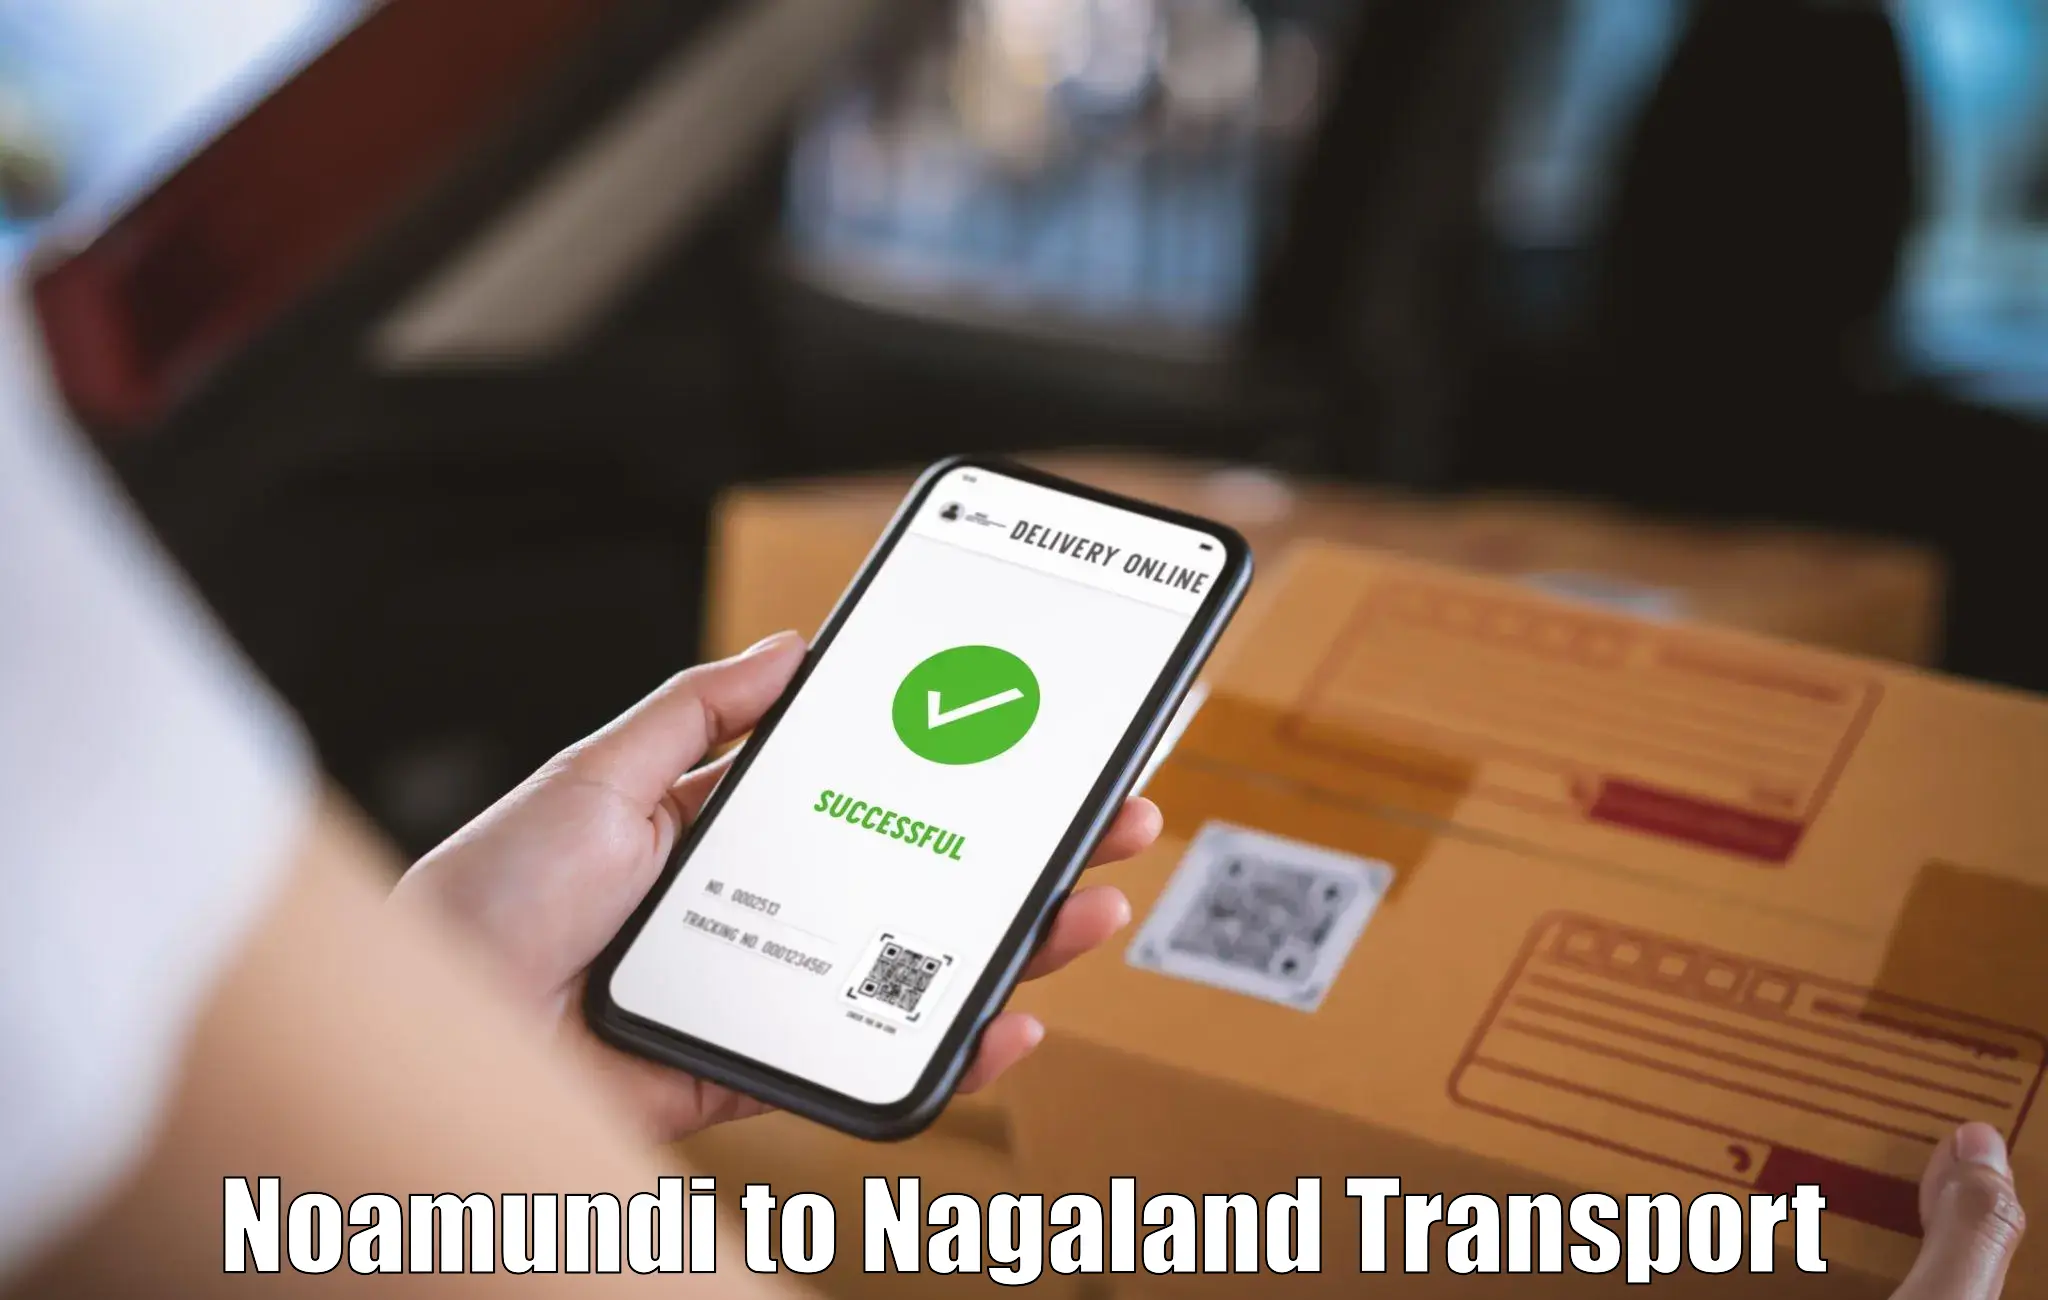 Goods delivery service Noamundi to NIT Nagaland